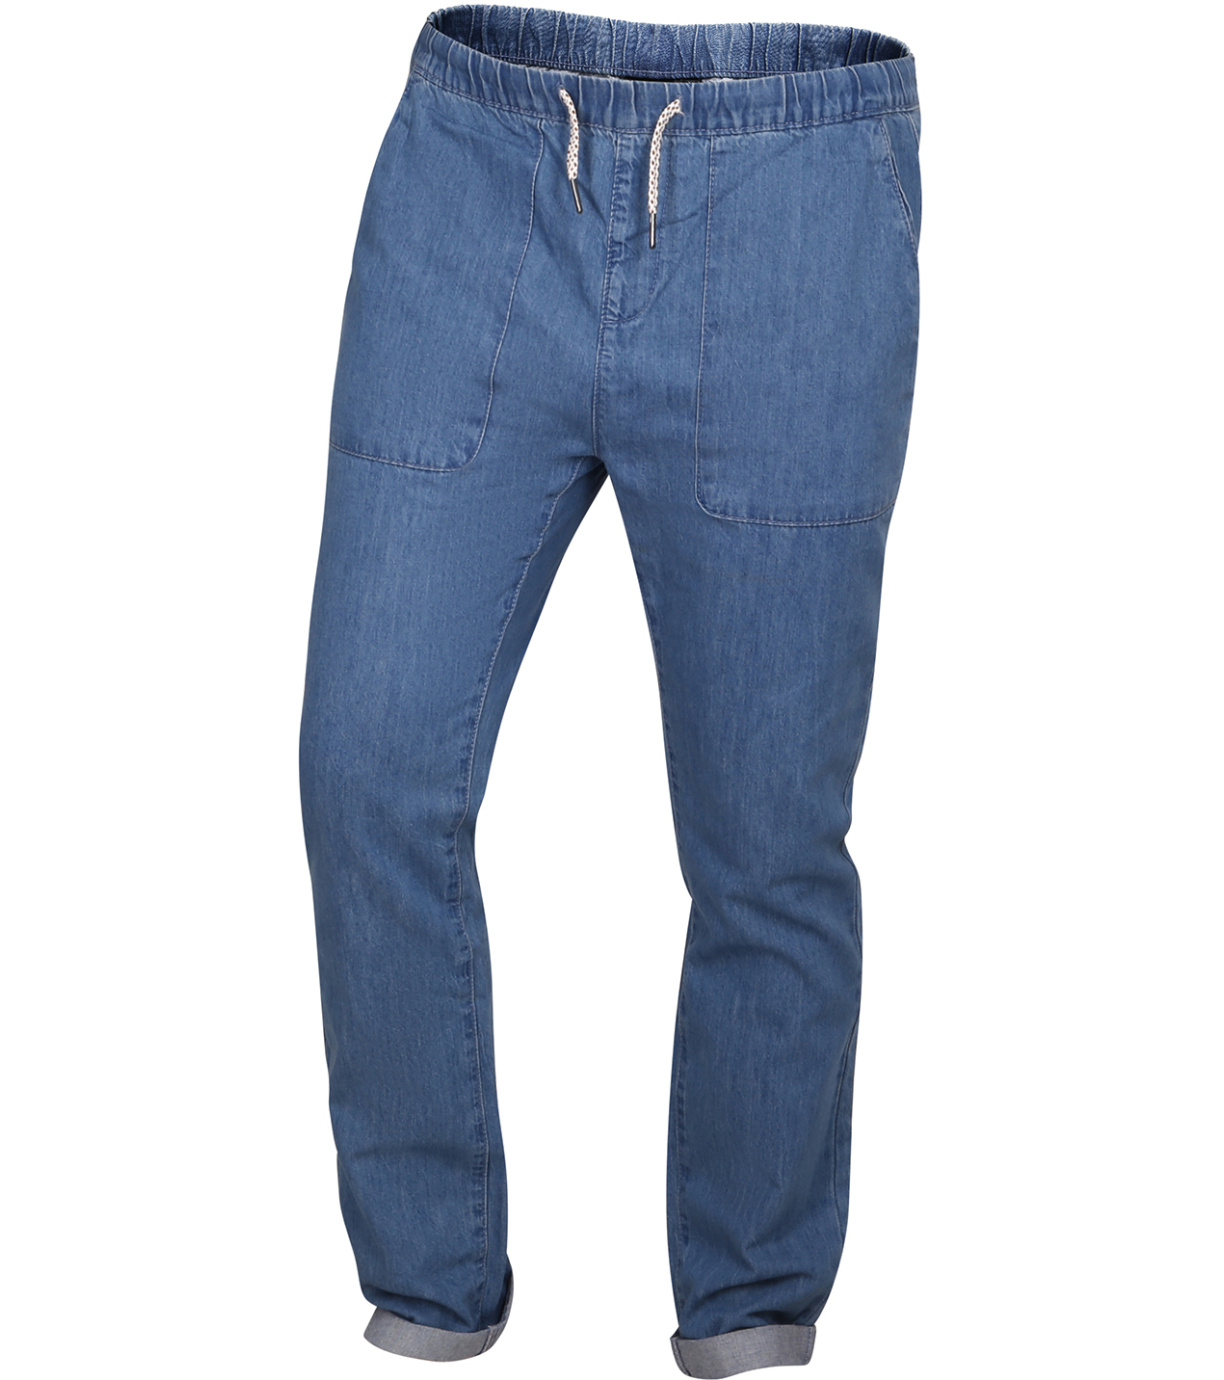 Pánské jeansové kalhoty JUDAR ALPINE PRO tmavá ocelověmodrá